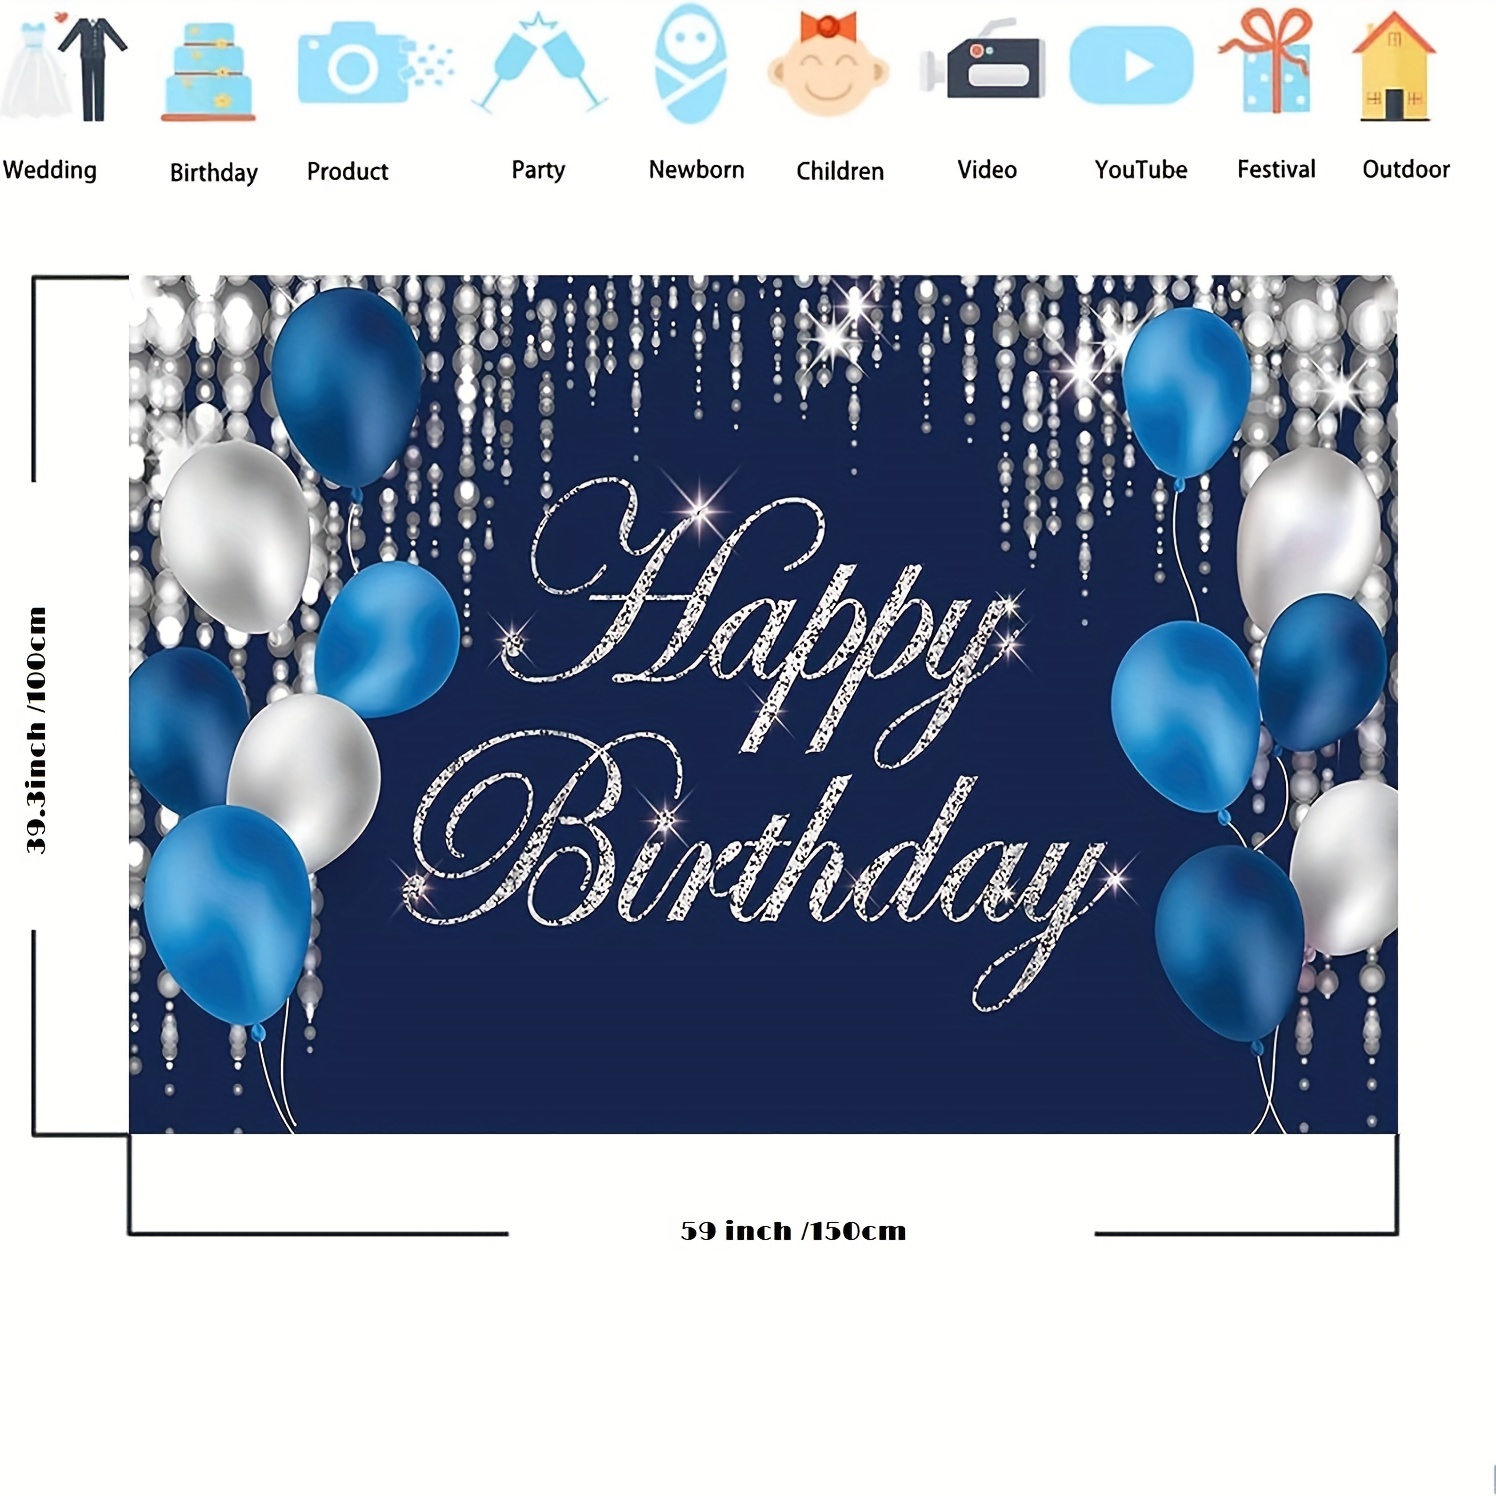 Un fondo azul con una pancarta de feliz cumpleaños y globos.